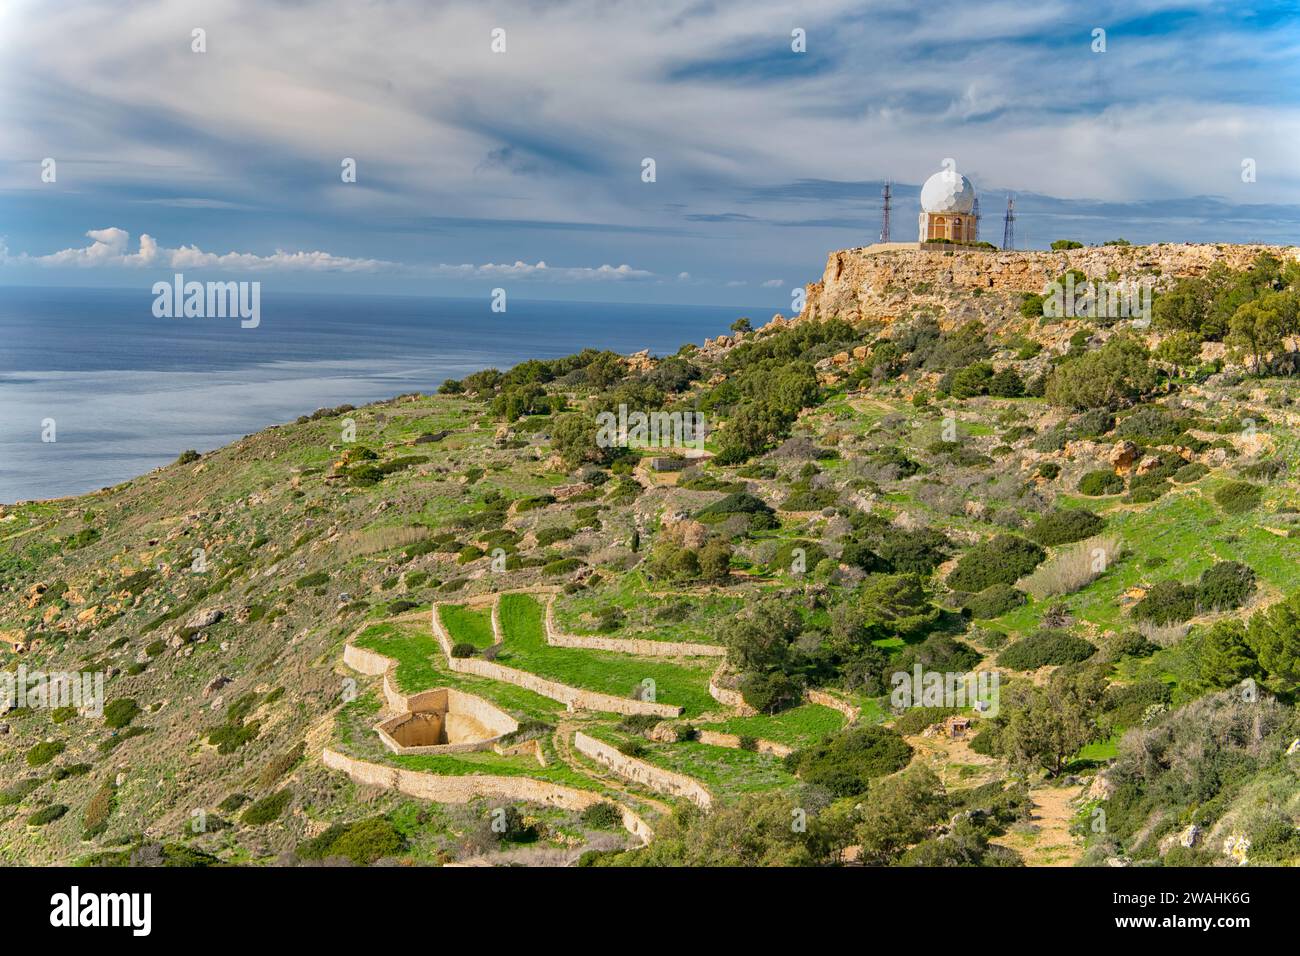 Radarstation bei Dingli Cliffs, Malta Stockfoto